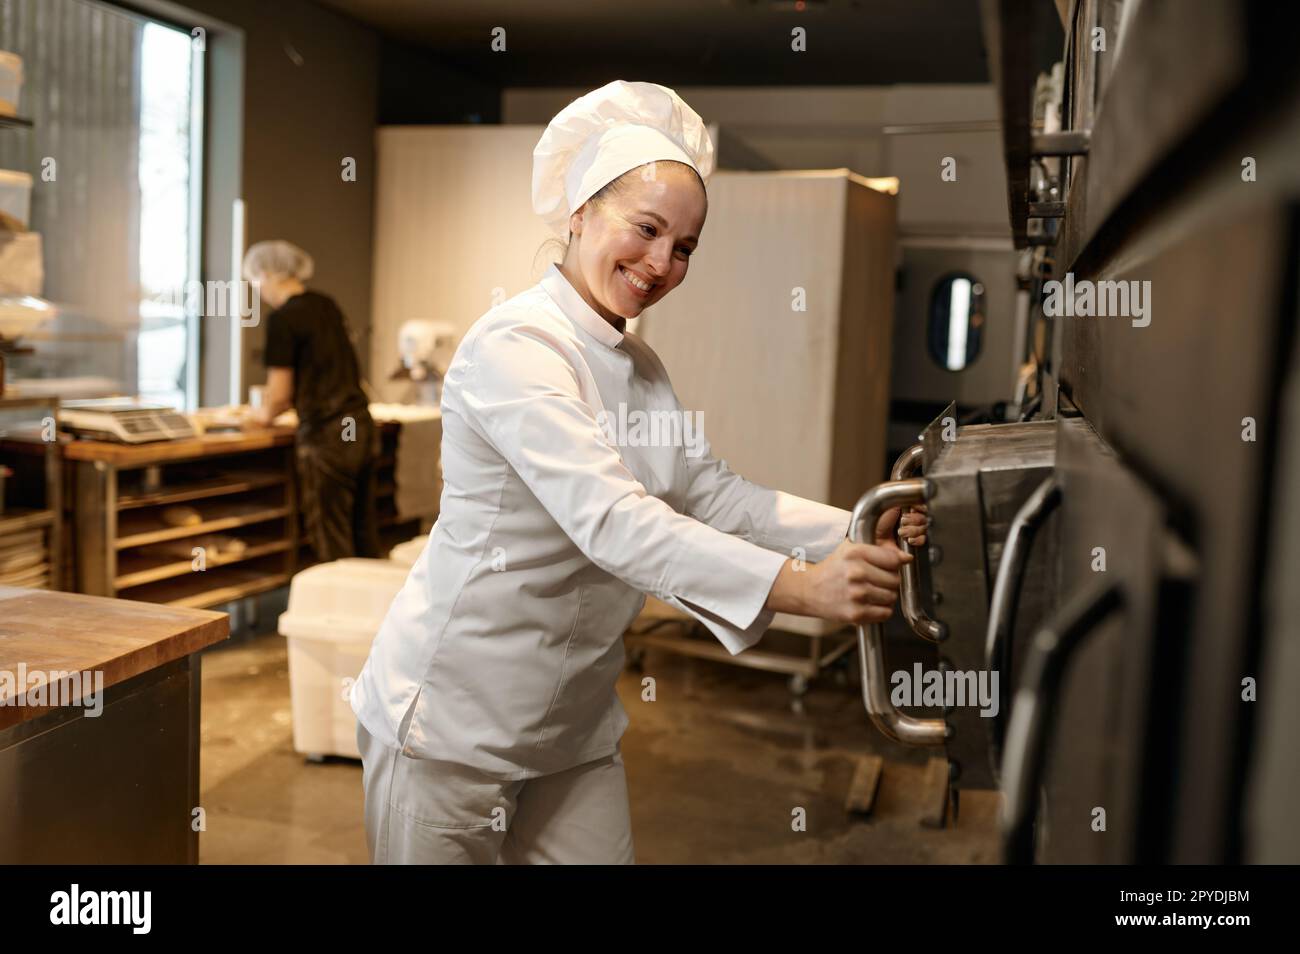 Femme souriante boulangère ouvrant un grand four industriel dans la cuisine moderne de boulangerie Banque D'Images